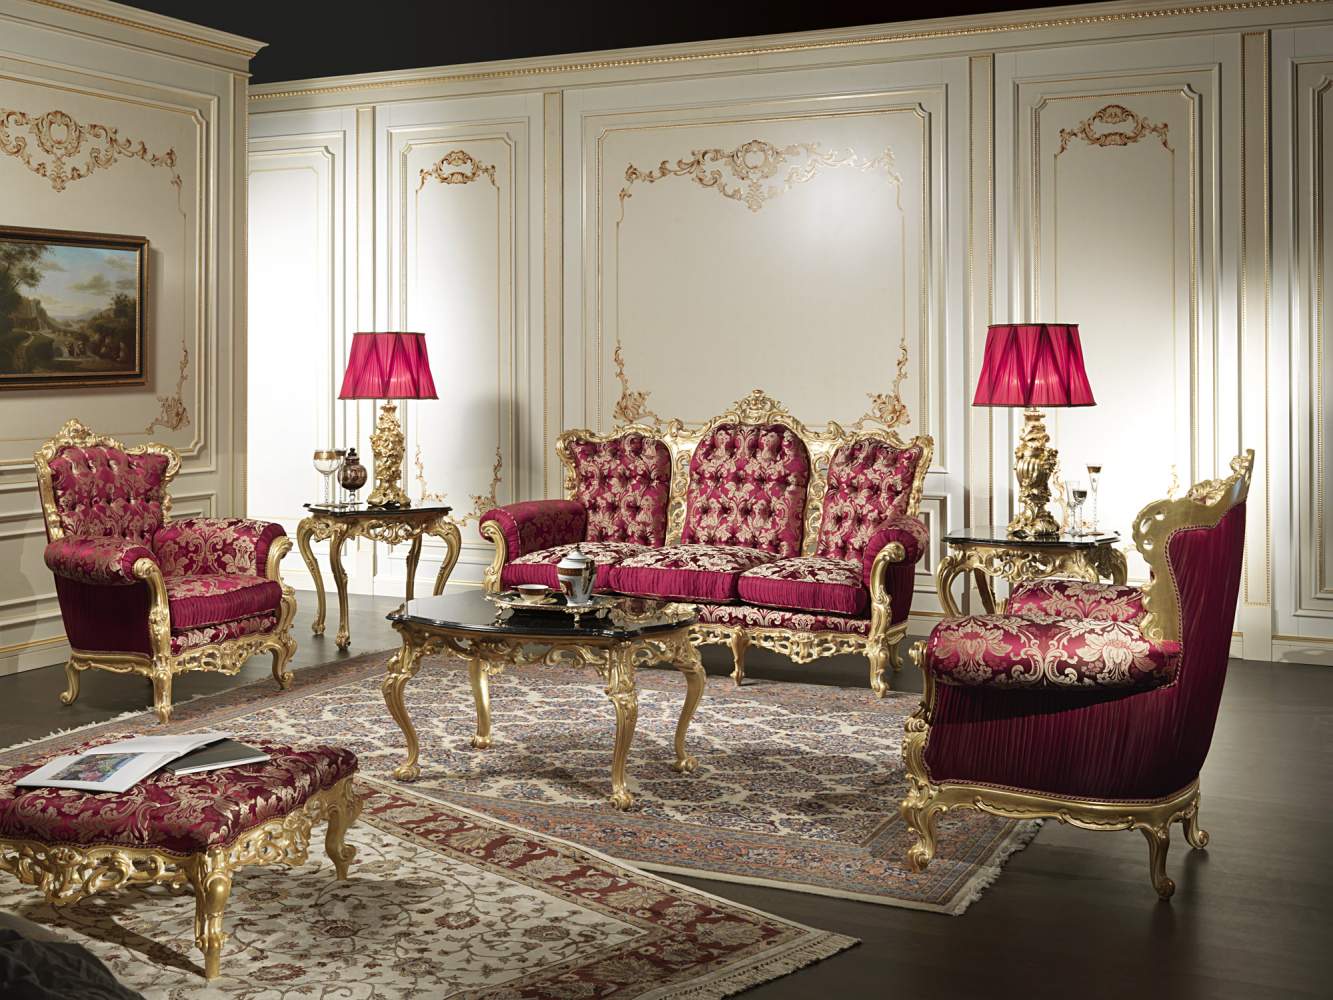 Salotto Barocco classico di lusso con intagli e dorature eseguiti a mano